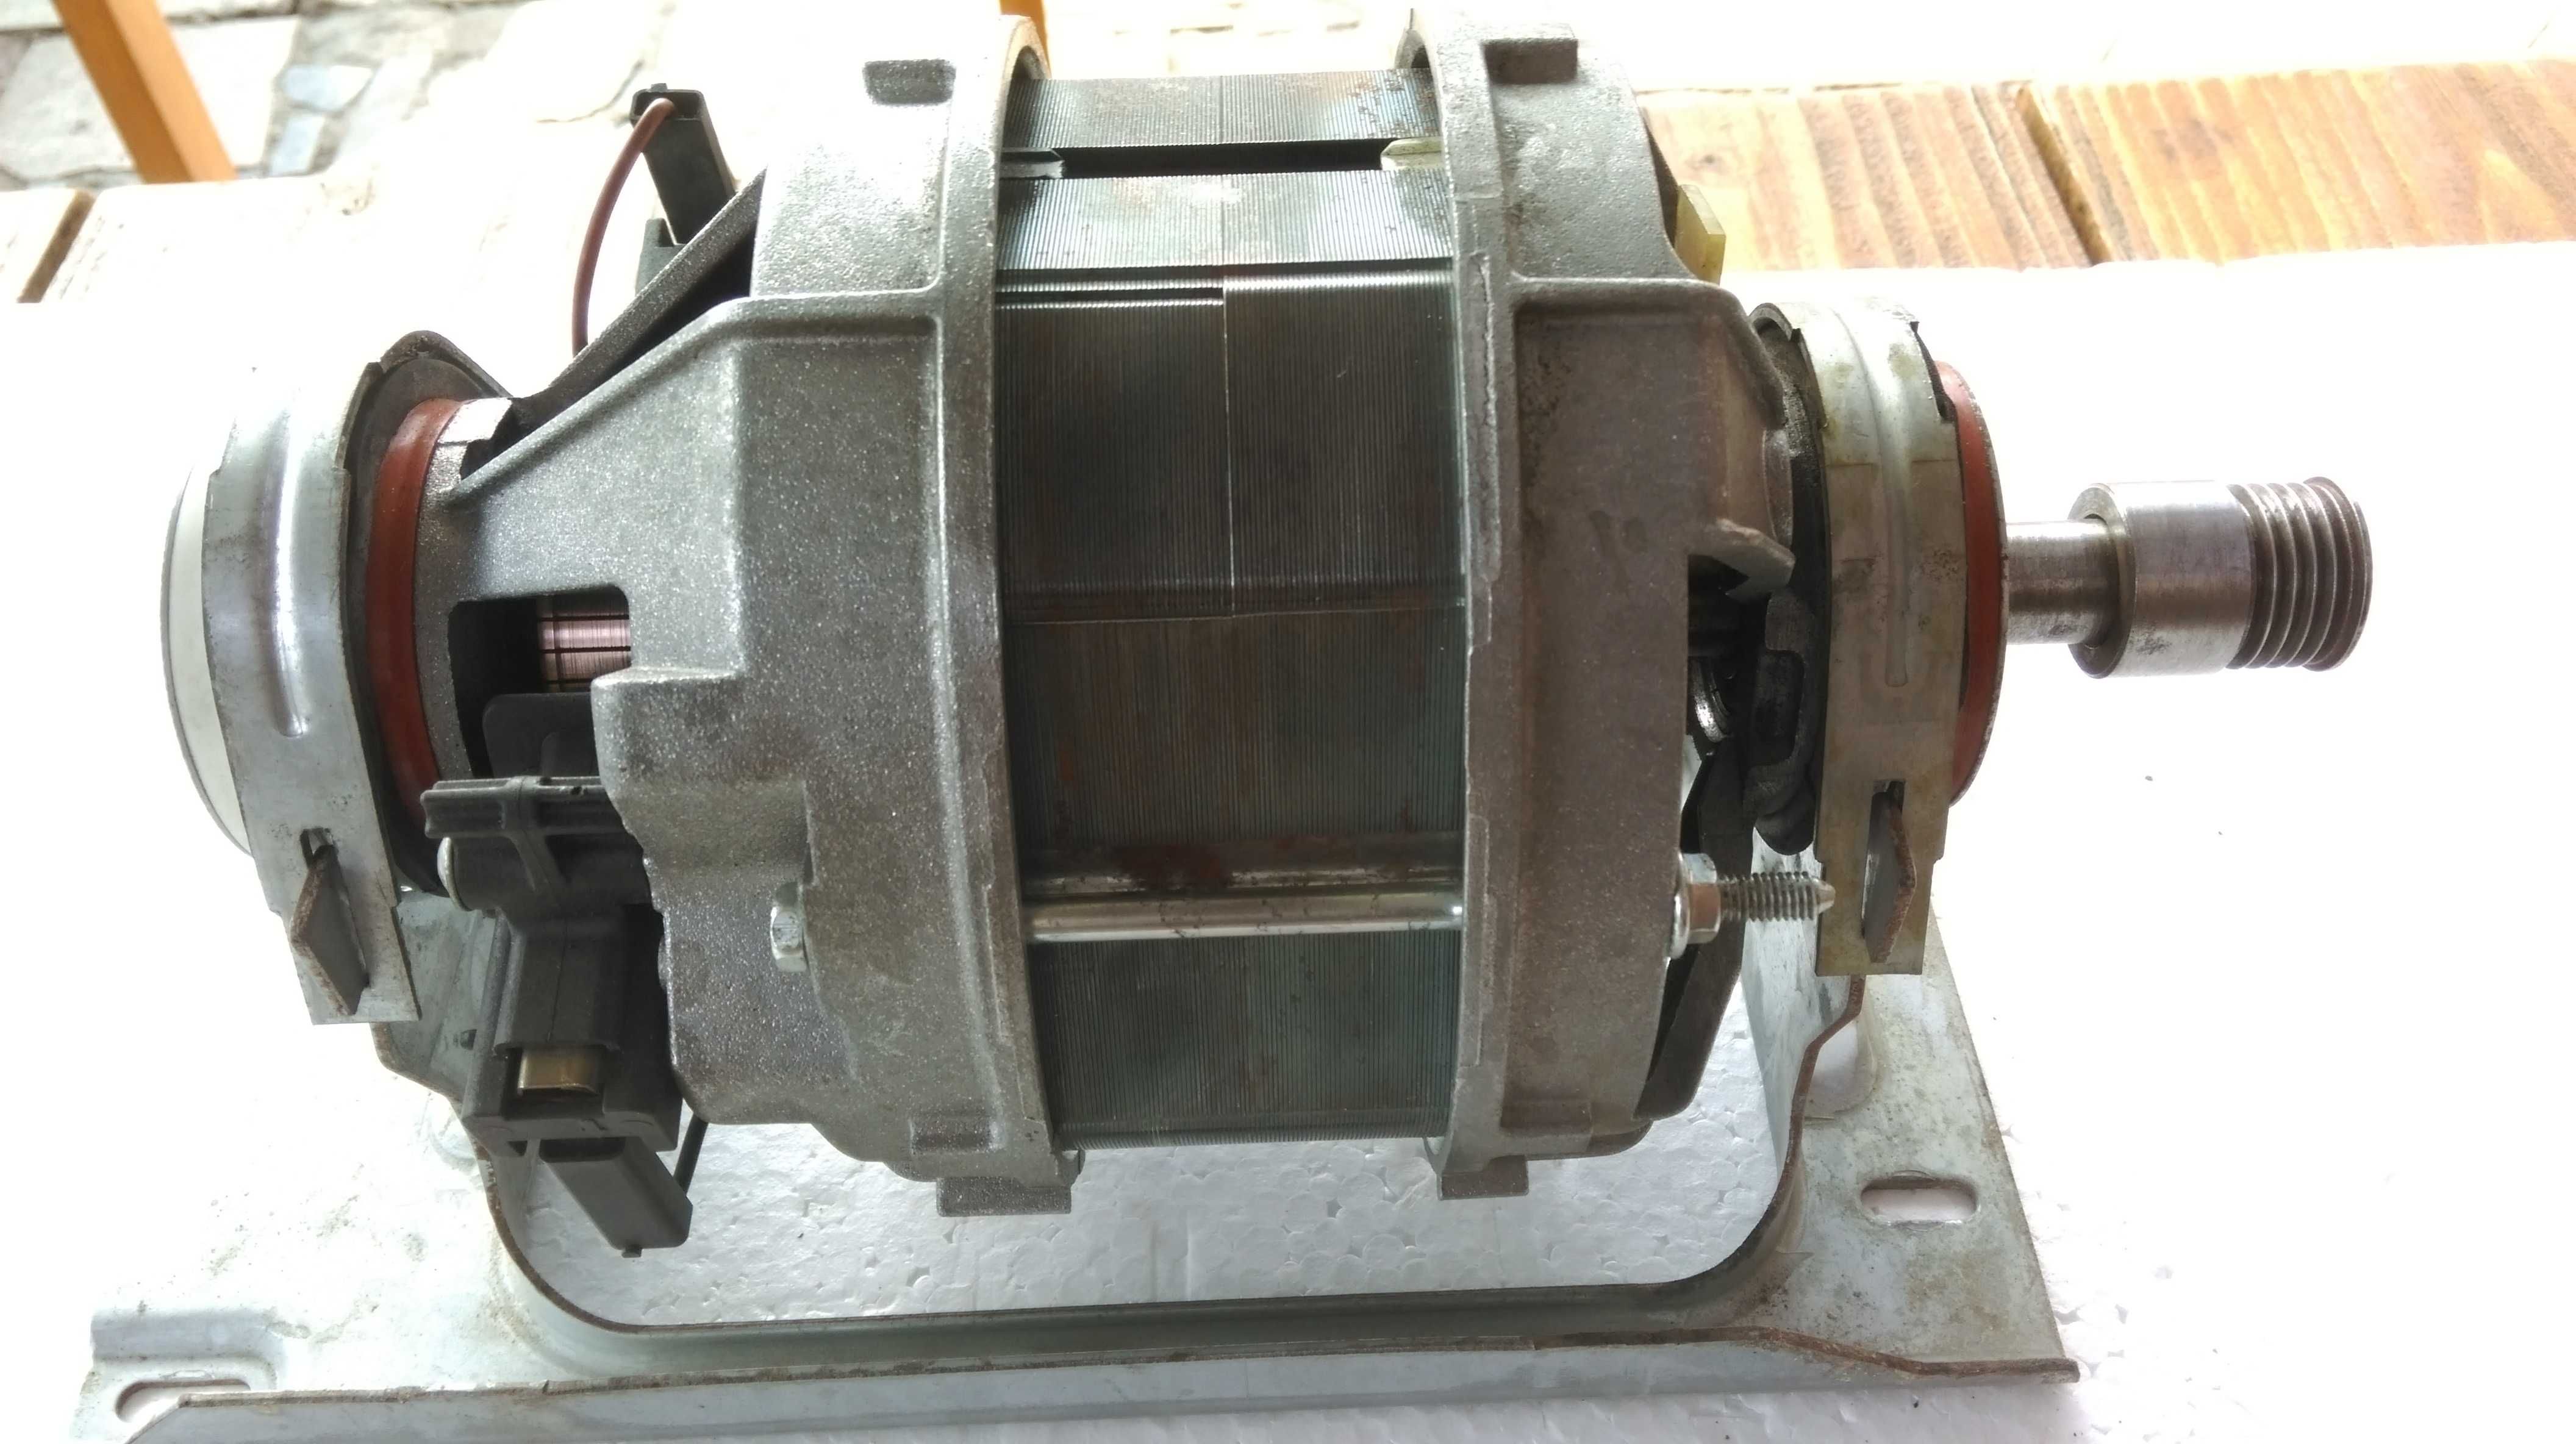 Двигатель стиральной машины Bosh, Gorenje, Simens фирмы Selni Франция